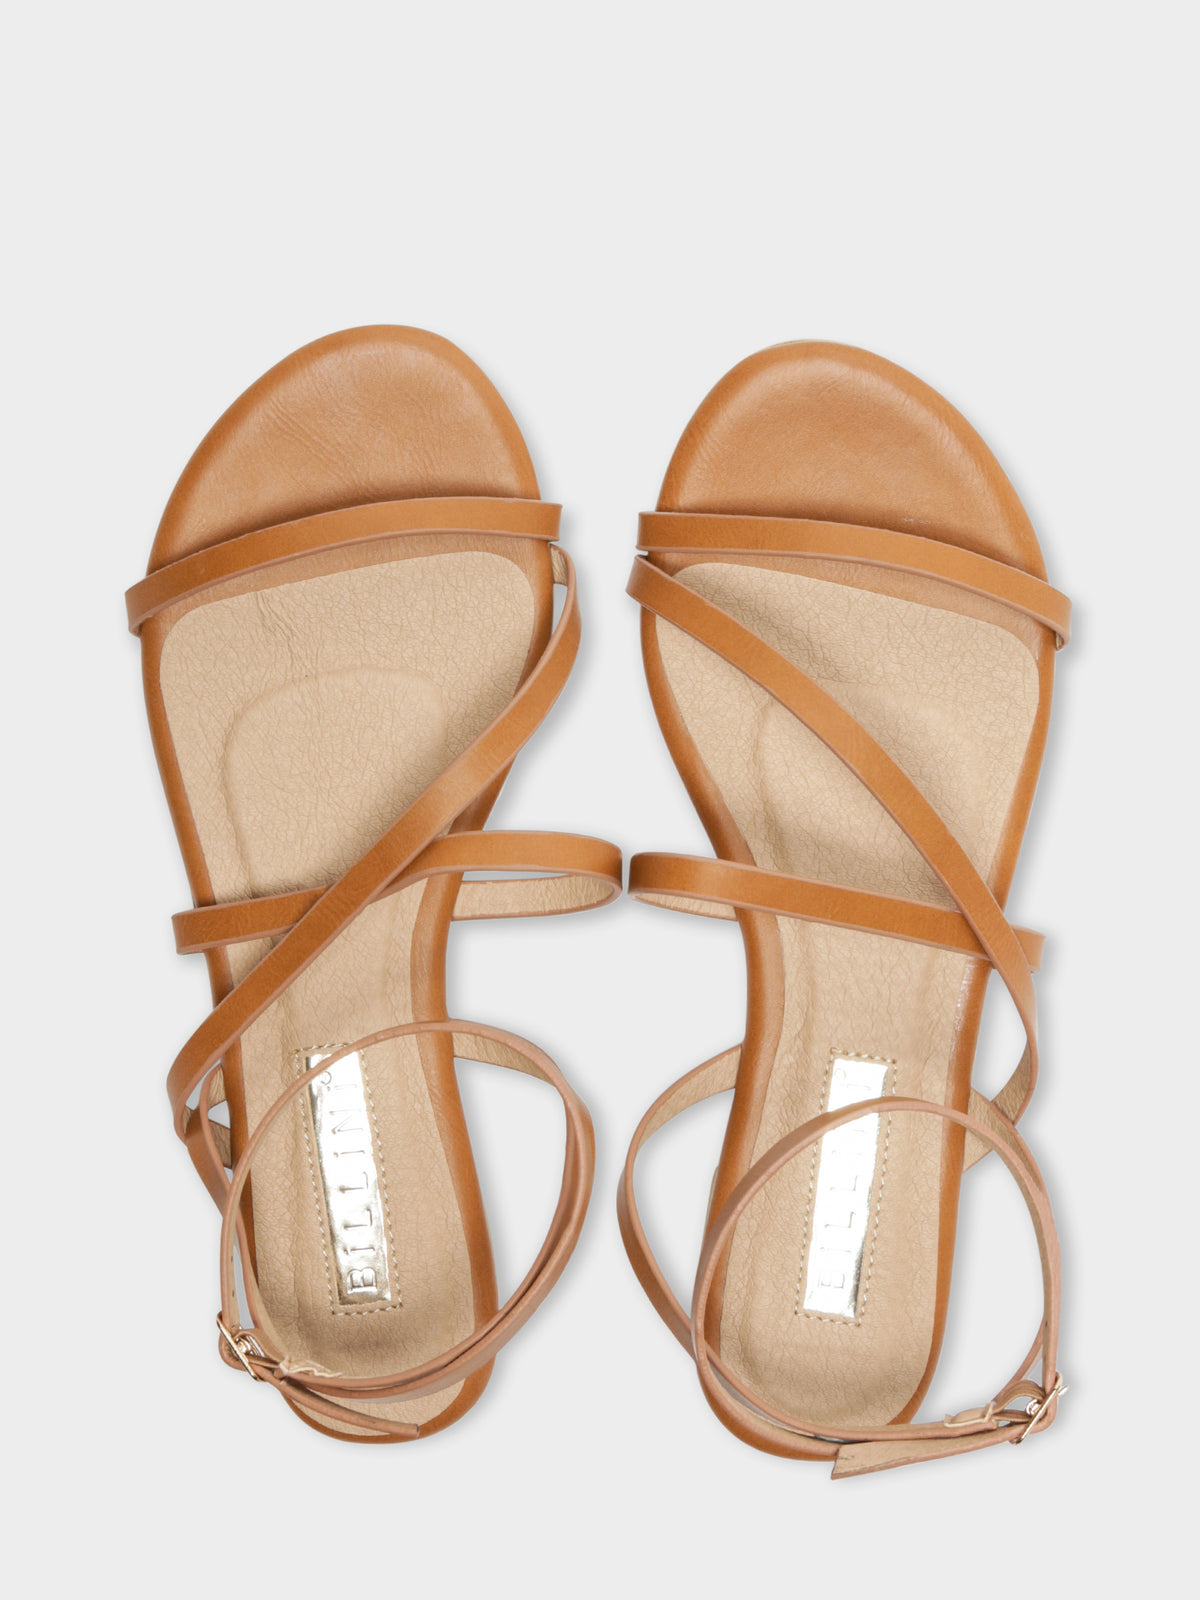 Denver Sandals in Tan